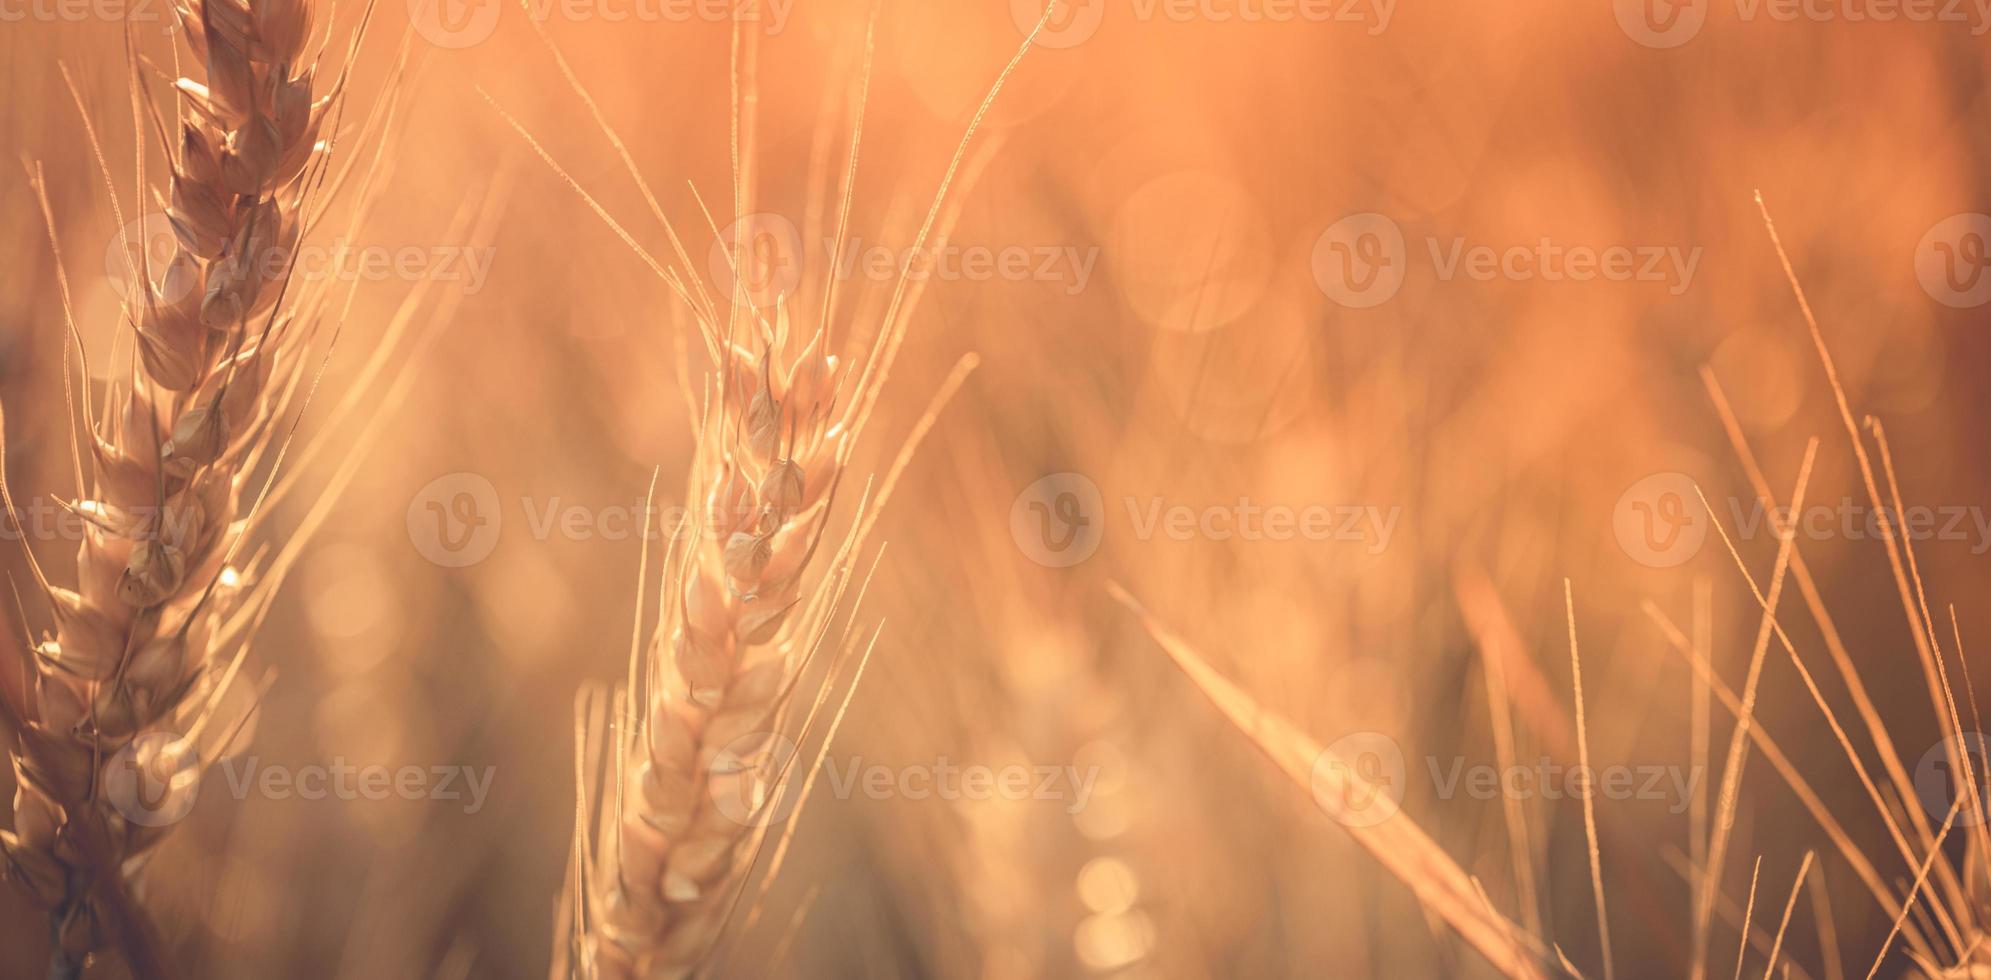 pôr do sol do campo de trigo. espigas de trigo dourado closeup. cenário rural sob a luz do sol brilhante. close-up de trigo dourado maduro, conceito de tempo de colheita dourada turva. agricultura da natureza, agricultura brilhante dos raios do sol foto